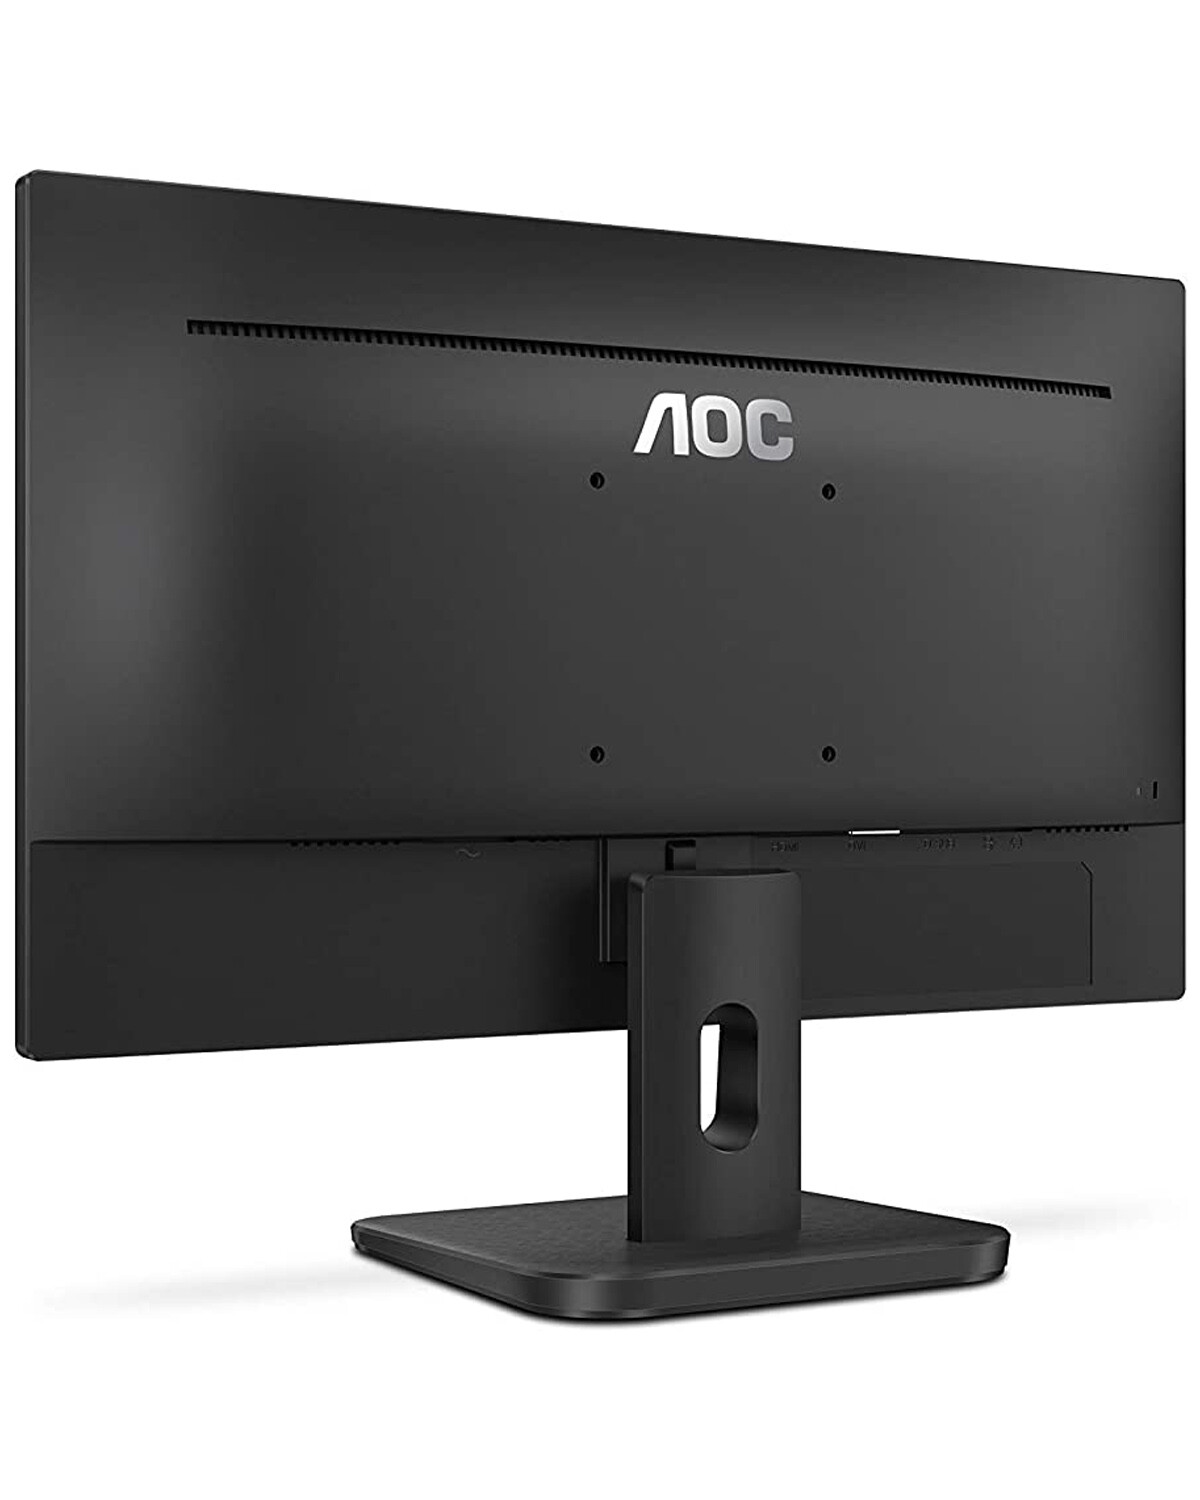 Monitor LED AOC 19.5 1600x900 con HDMI y VGA — Electroventas